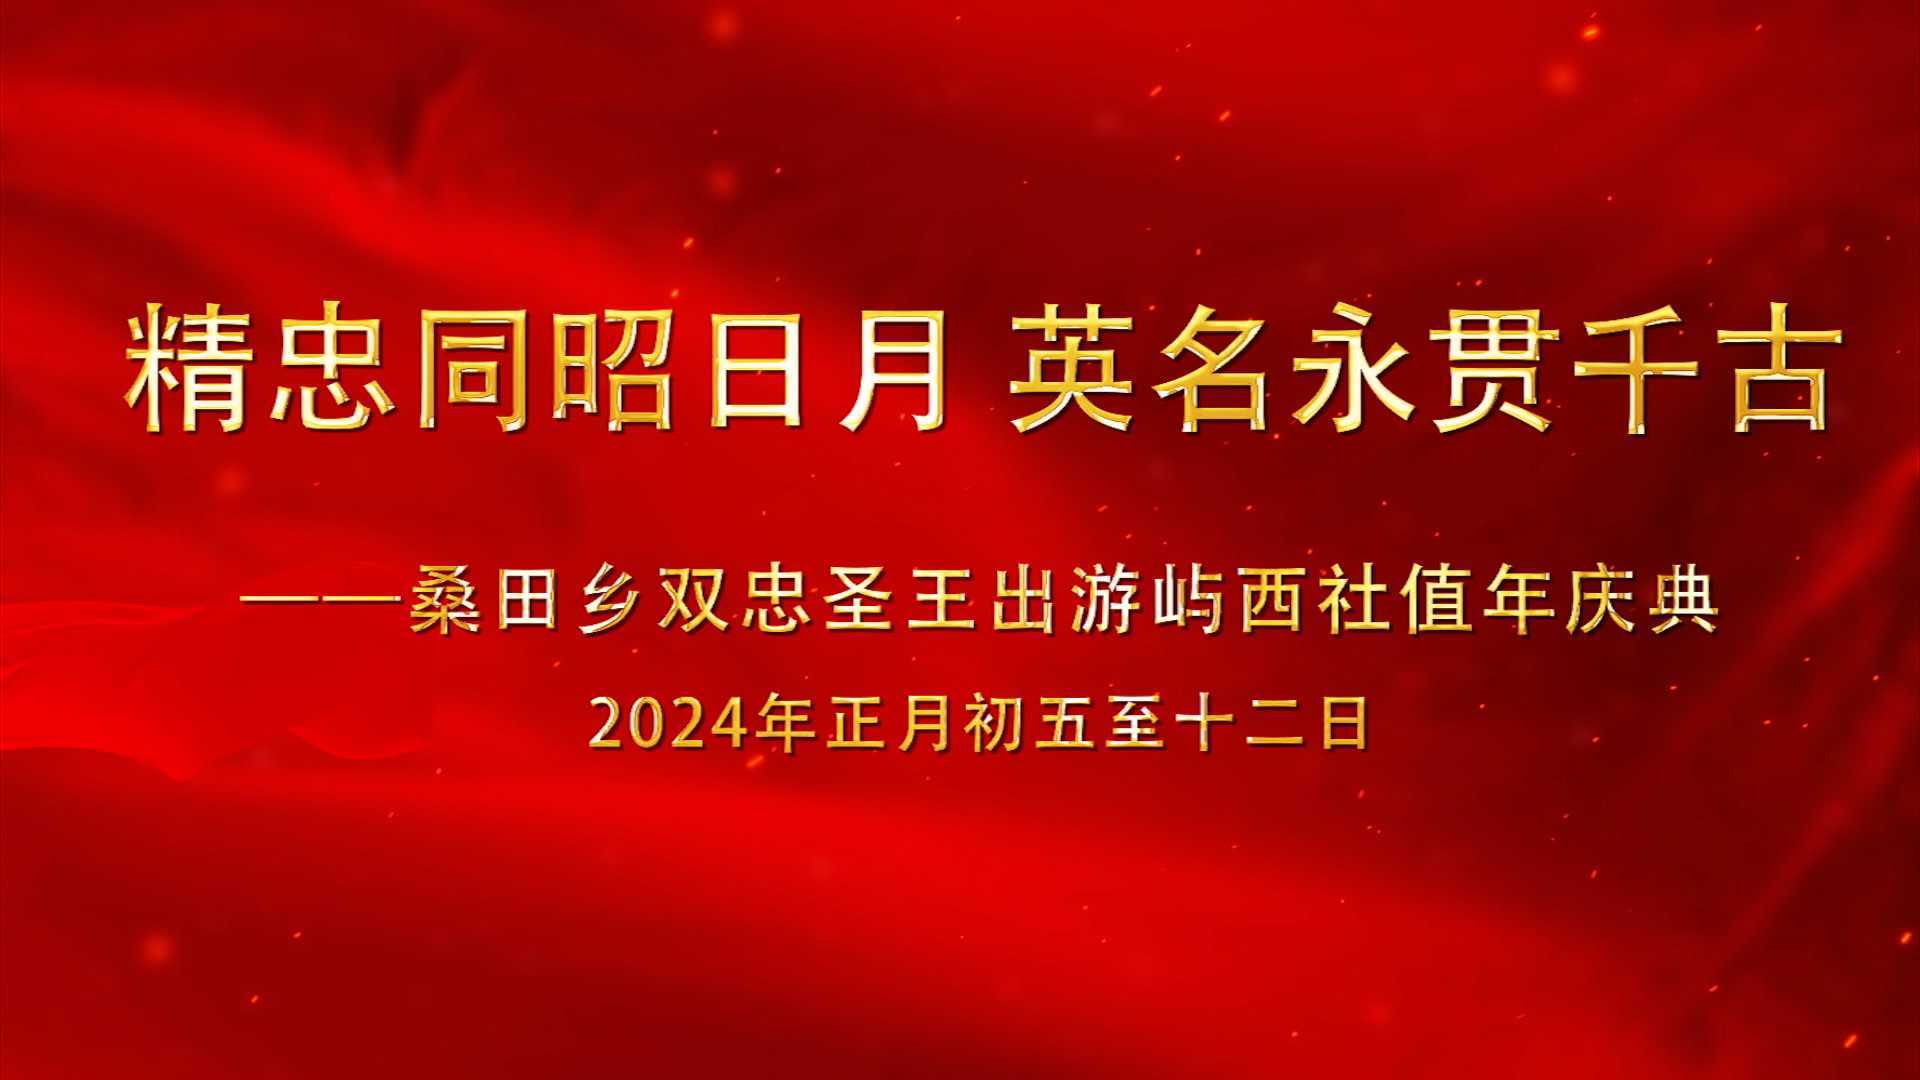 B 桑田乡双忠圣王出游屿西社值年庆典( 2024年正月)